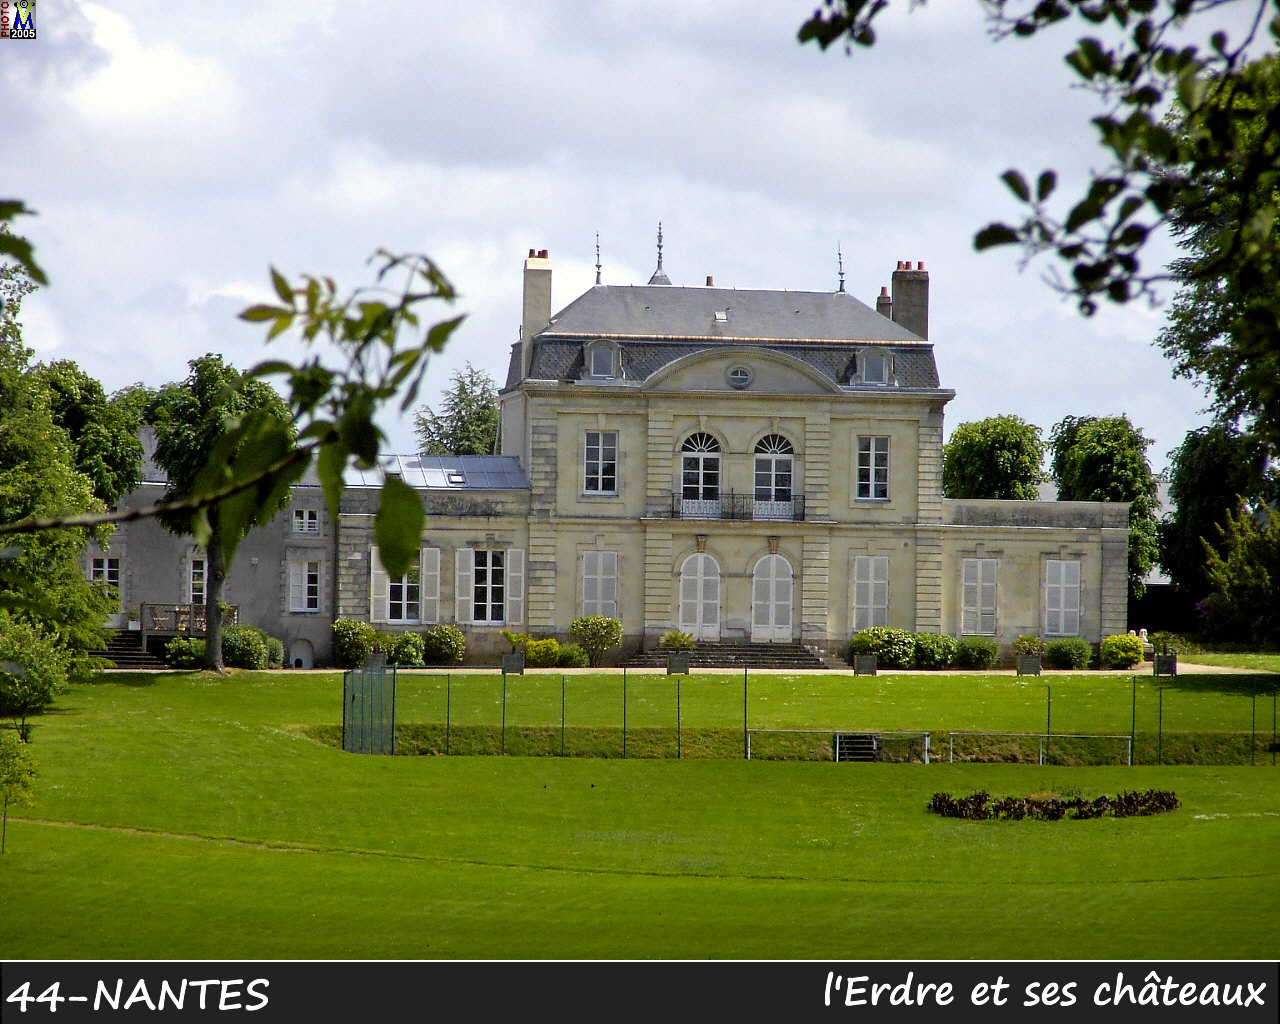 44NANTES_erdre-chateau_104.jpg